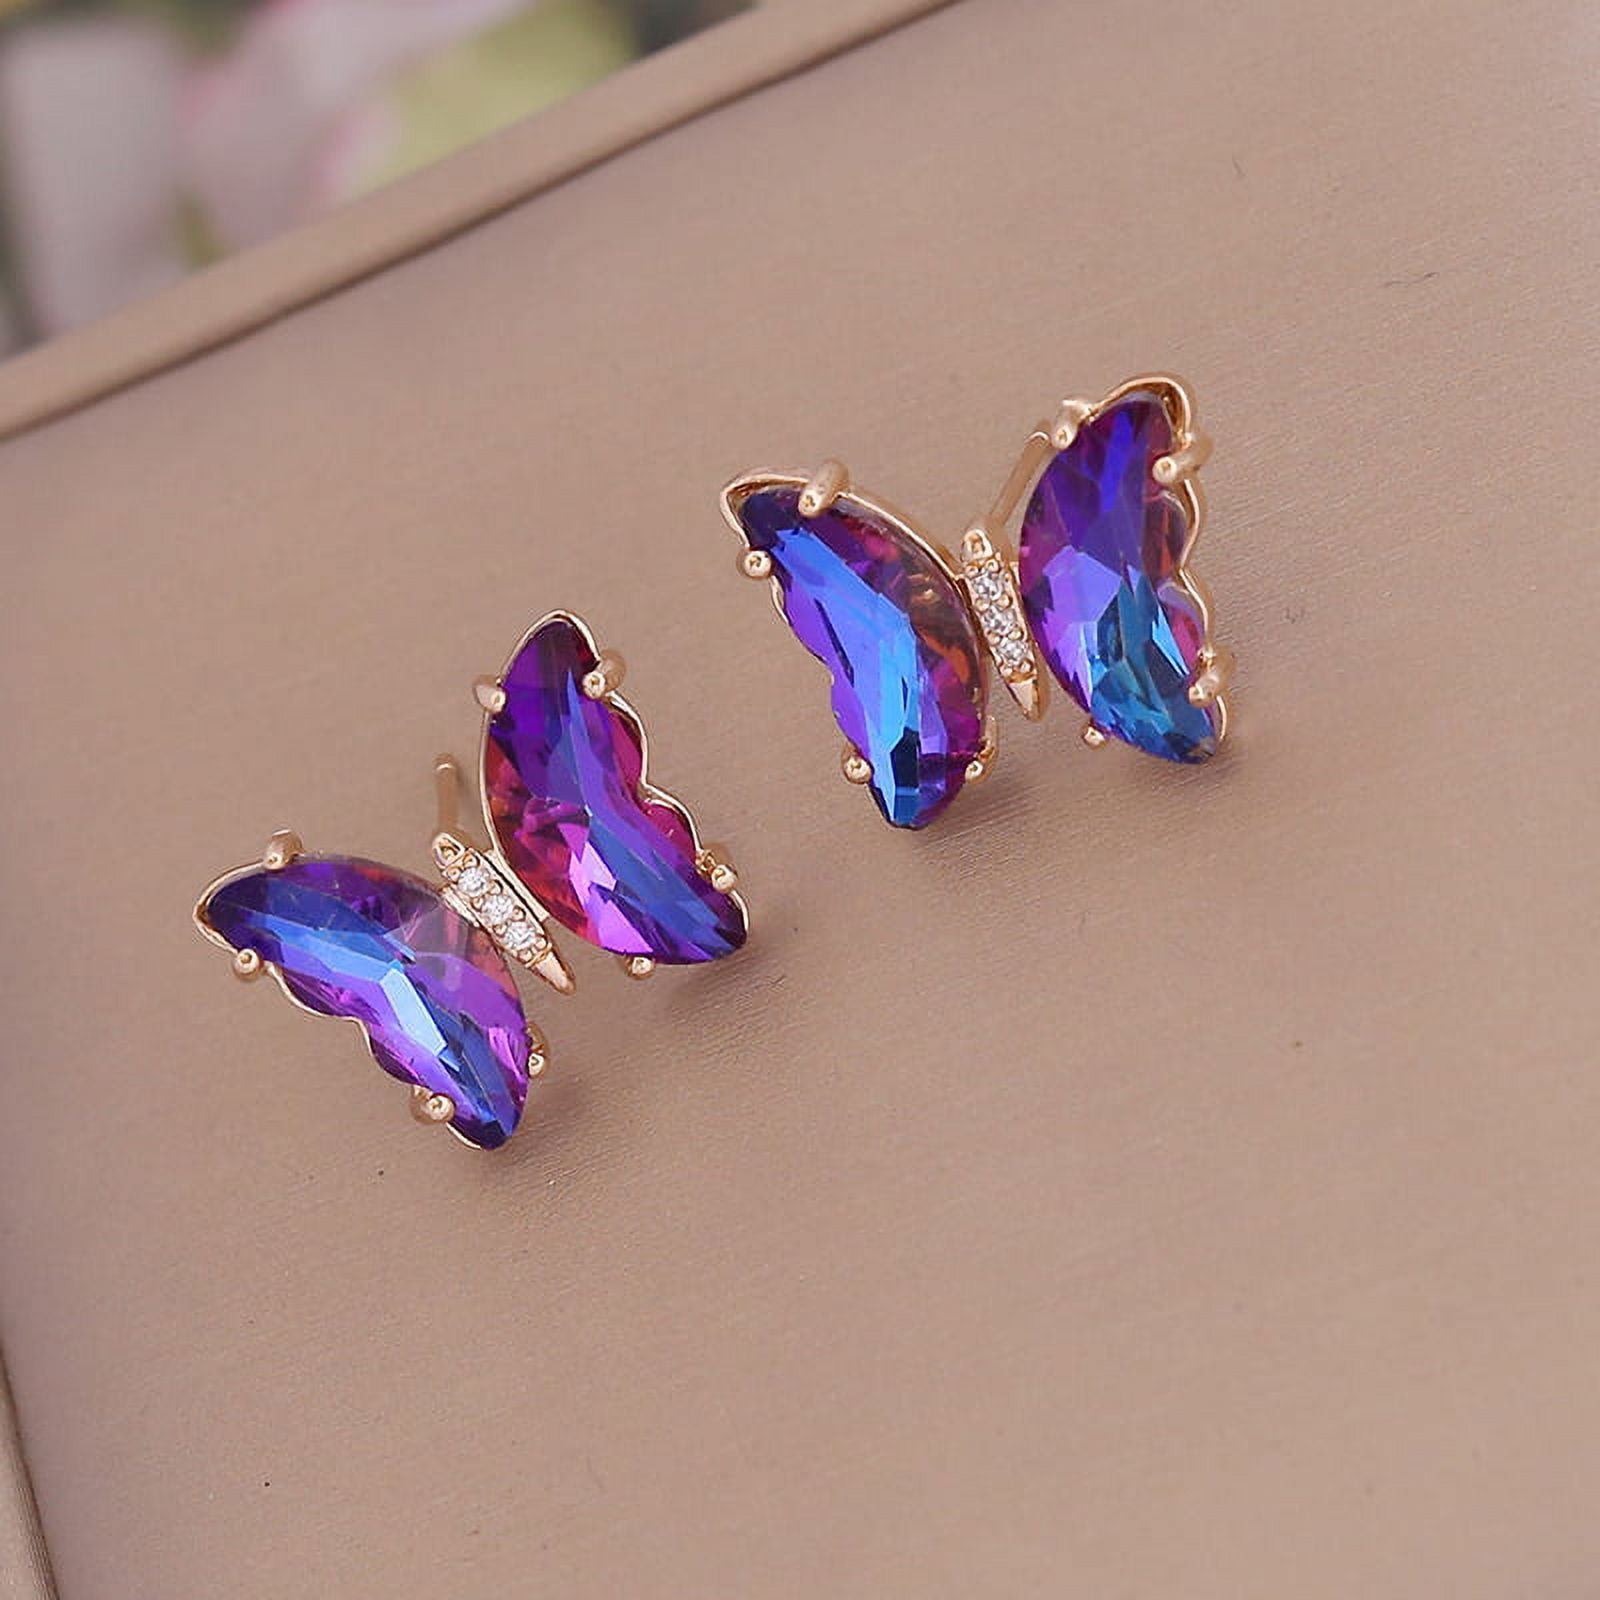 Buy Purple Earrings for Women by Youbella Online | Ajio.com